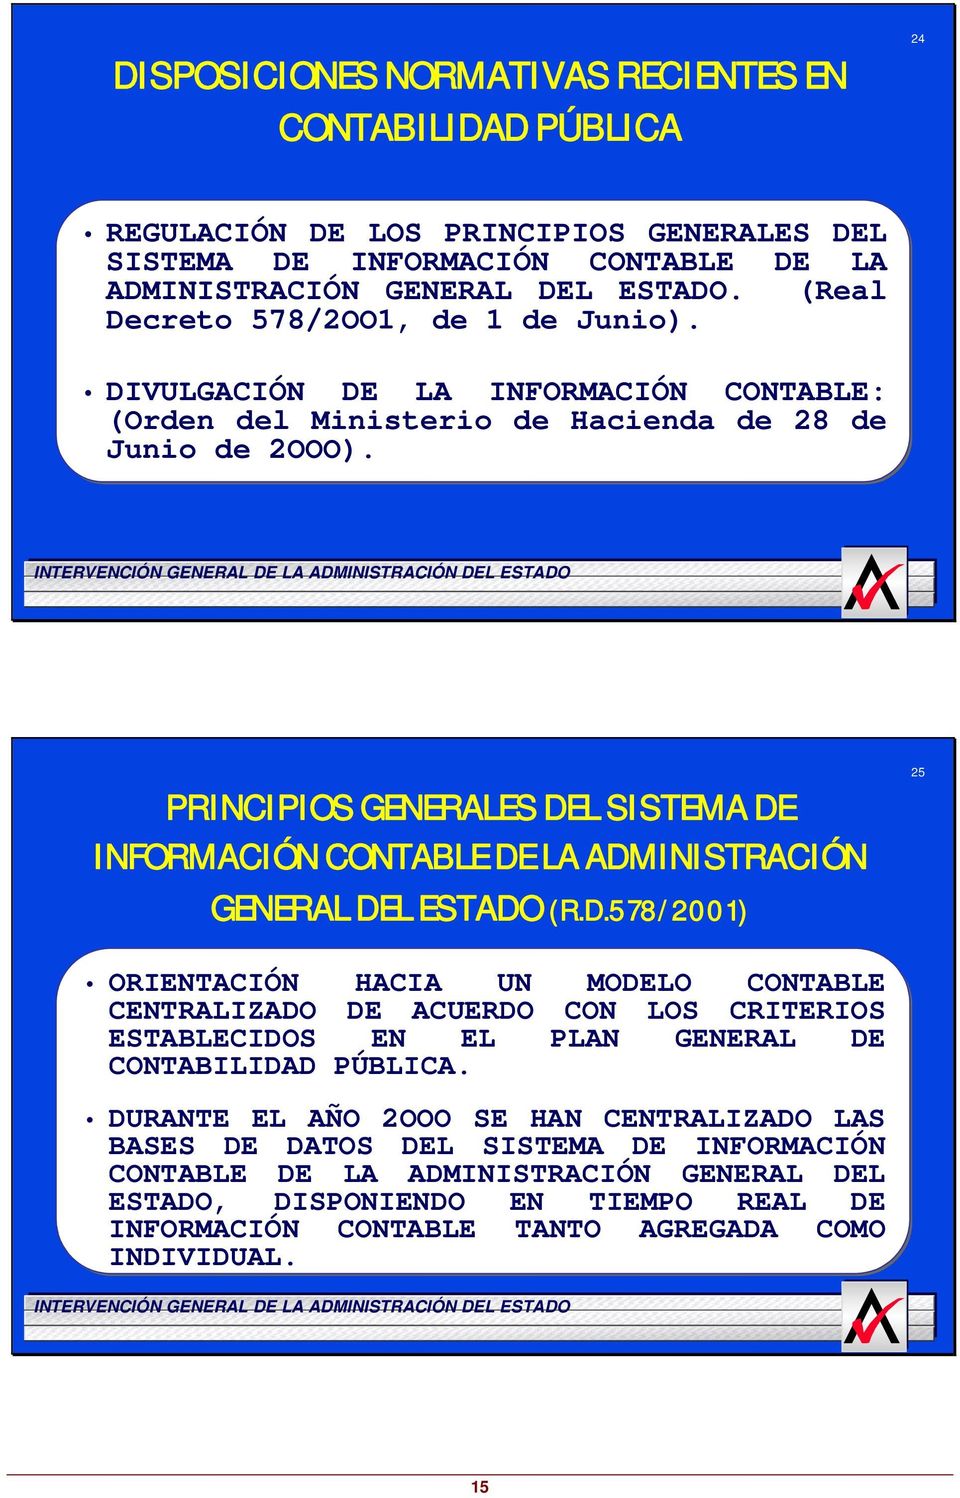 PRINCIPIOS GENERALES DEL SISTEMA DE INFORMACIÓN CONTABLE DE LA ADMINISTRACIÓN GENERAL DEL ESTADO (R.D.578/2001) 25 ORIENTACIÓN HACIA UN MODELO CONTABLE CENTRALIZADO DE ACUERDO CON LOS CRITERIOS ESTABLECIDOS EN EL PLAN GENERAL DE CONTABILIDAD PÚBLICA.